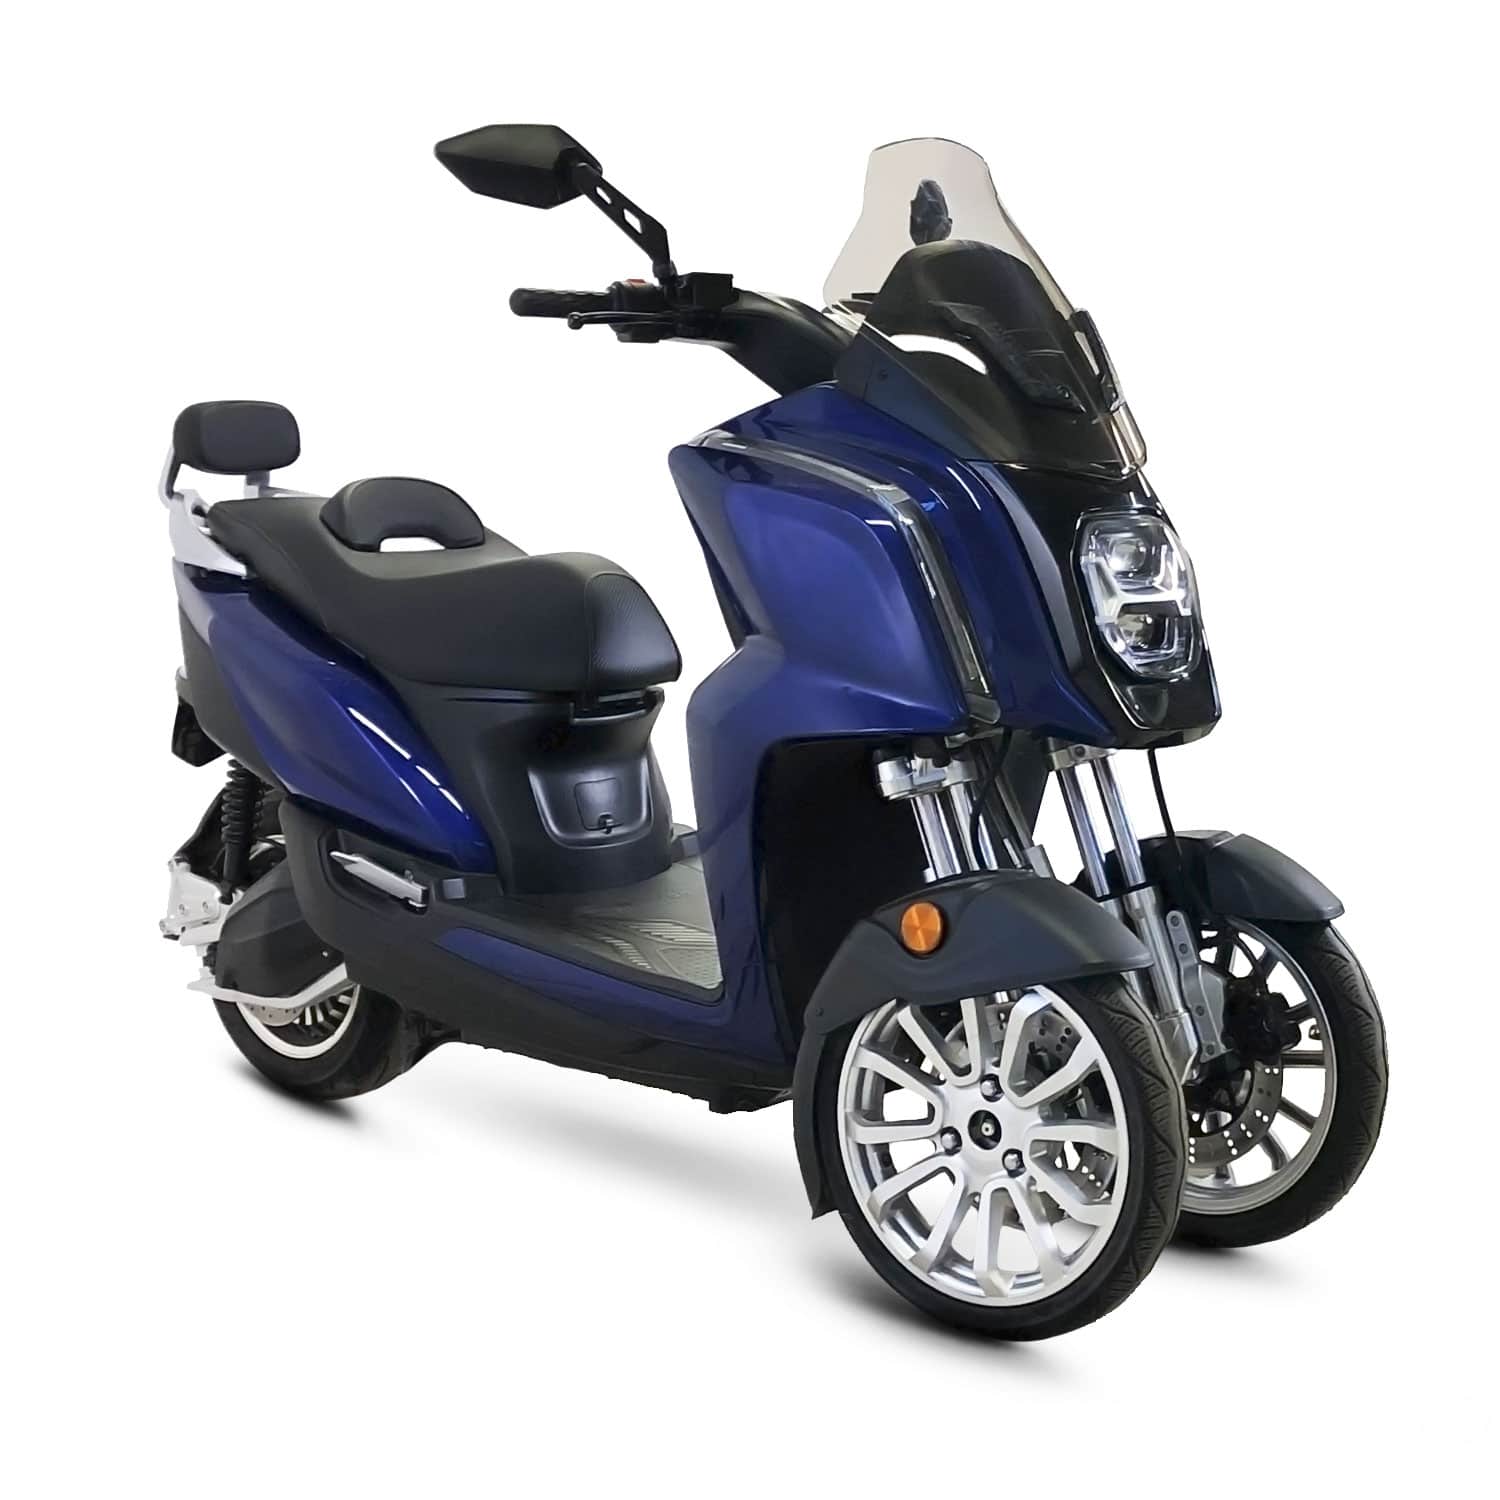 Scooter Electrique 125 cc et 50 cc au meilleur prix